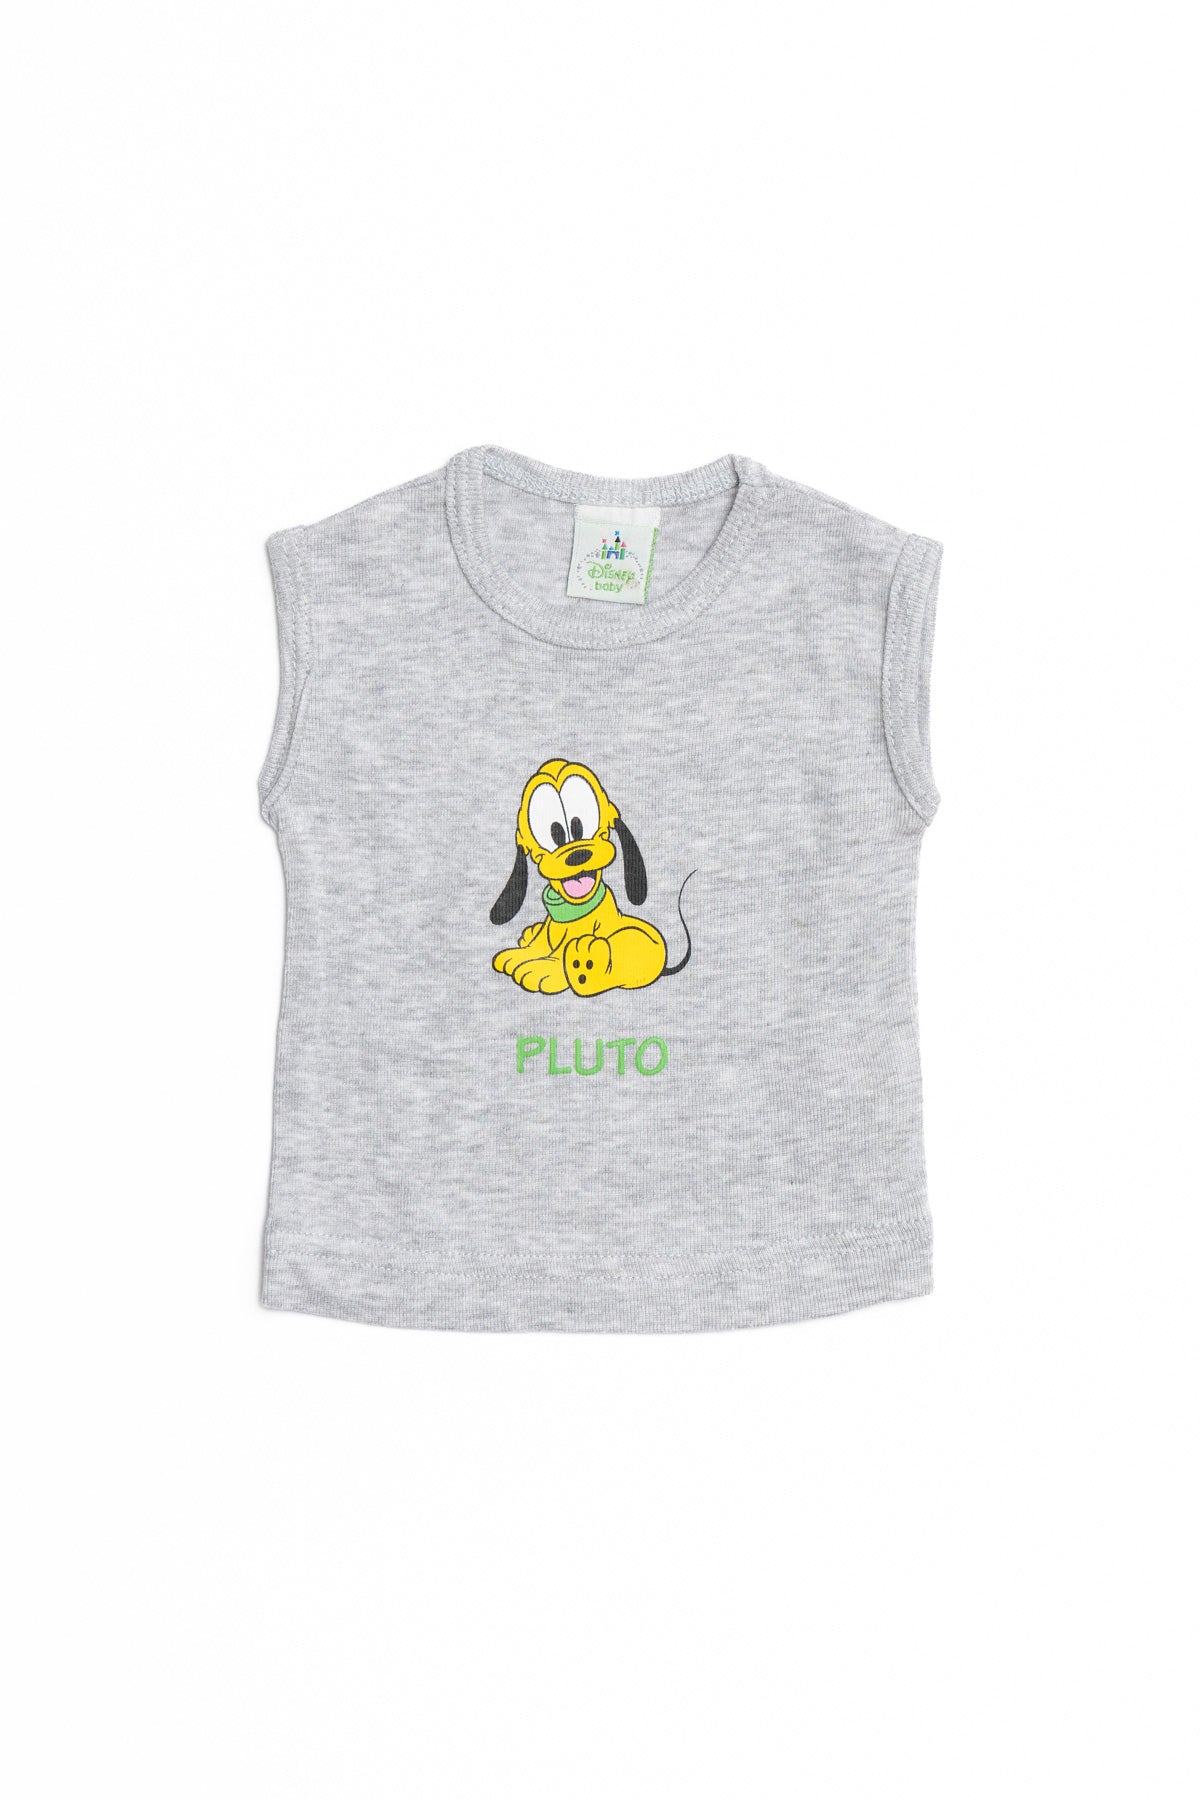 T-Shirt Baby  Pluto sleeveless  4091